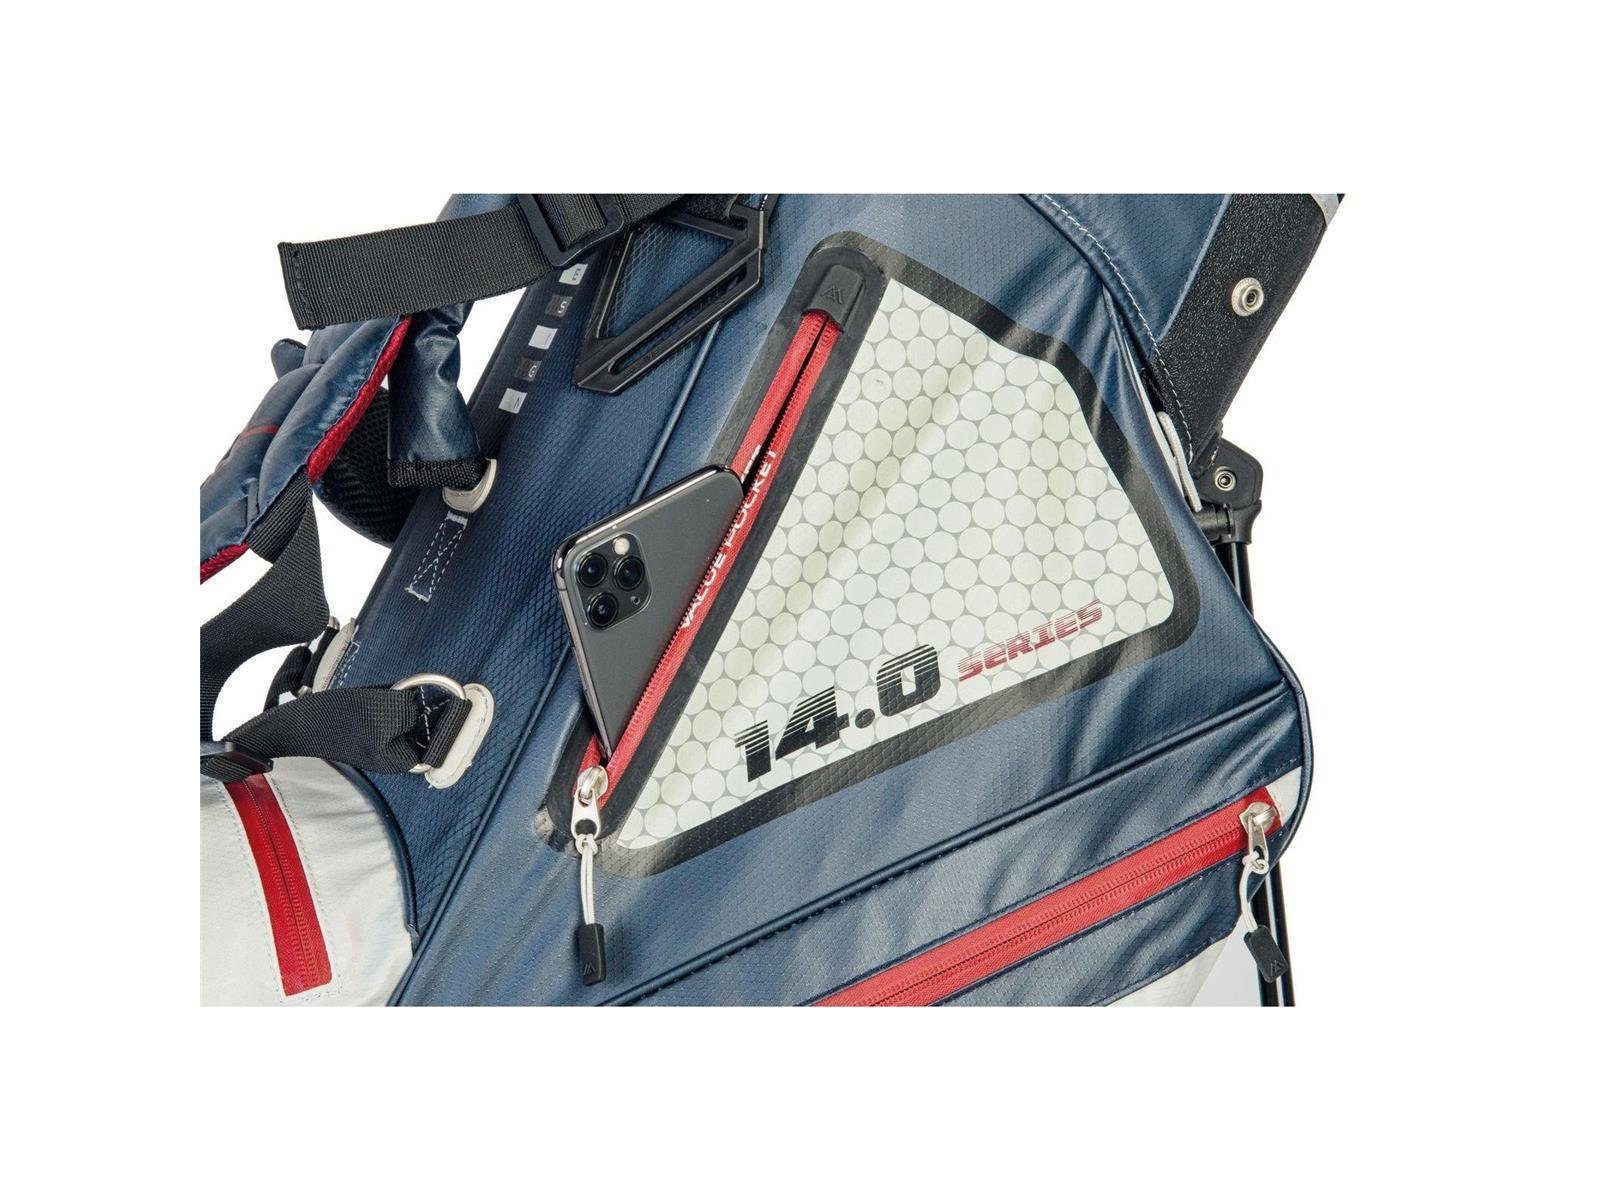 Golf Big Tour, Hybrid Wasserabweisen Ständerbag BIG Golfreisetasche I DRI MAX Max Silber 14-fach LITE Divider